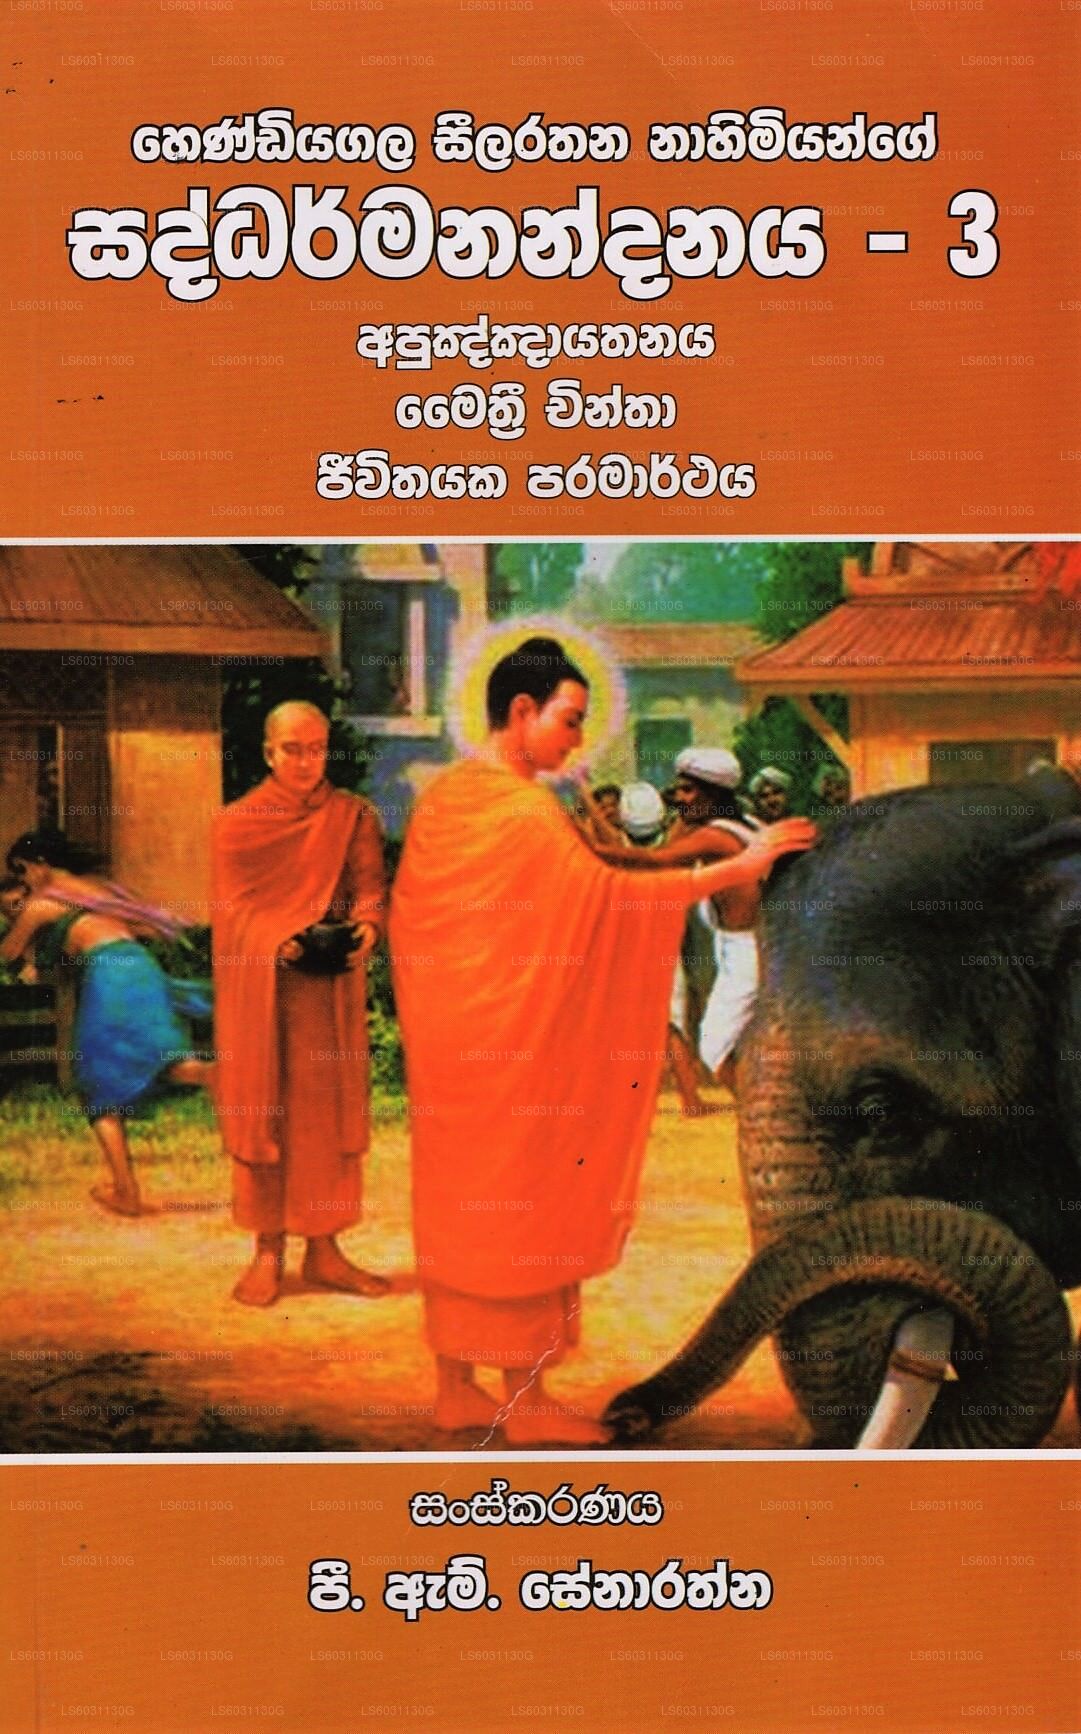 Hendiyagala Seelarathana Nahimiyange Saddharmanandanaya-3 (Apuknknayathanaya Maithri Chintha Jiwithay 